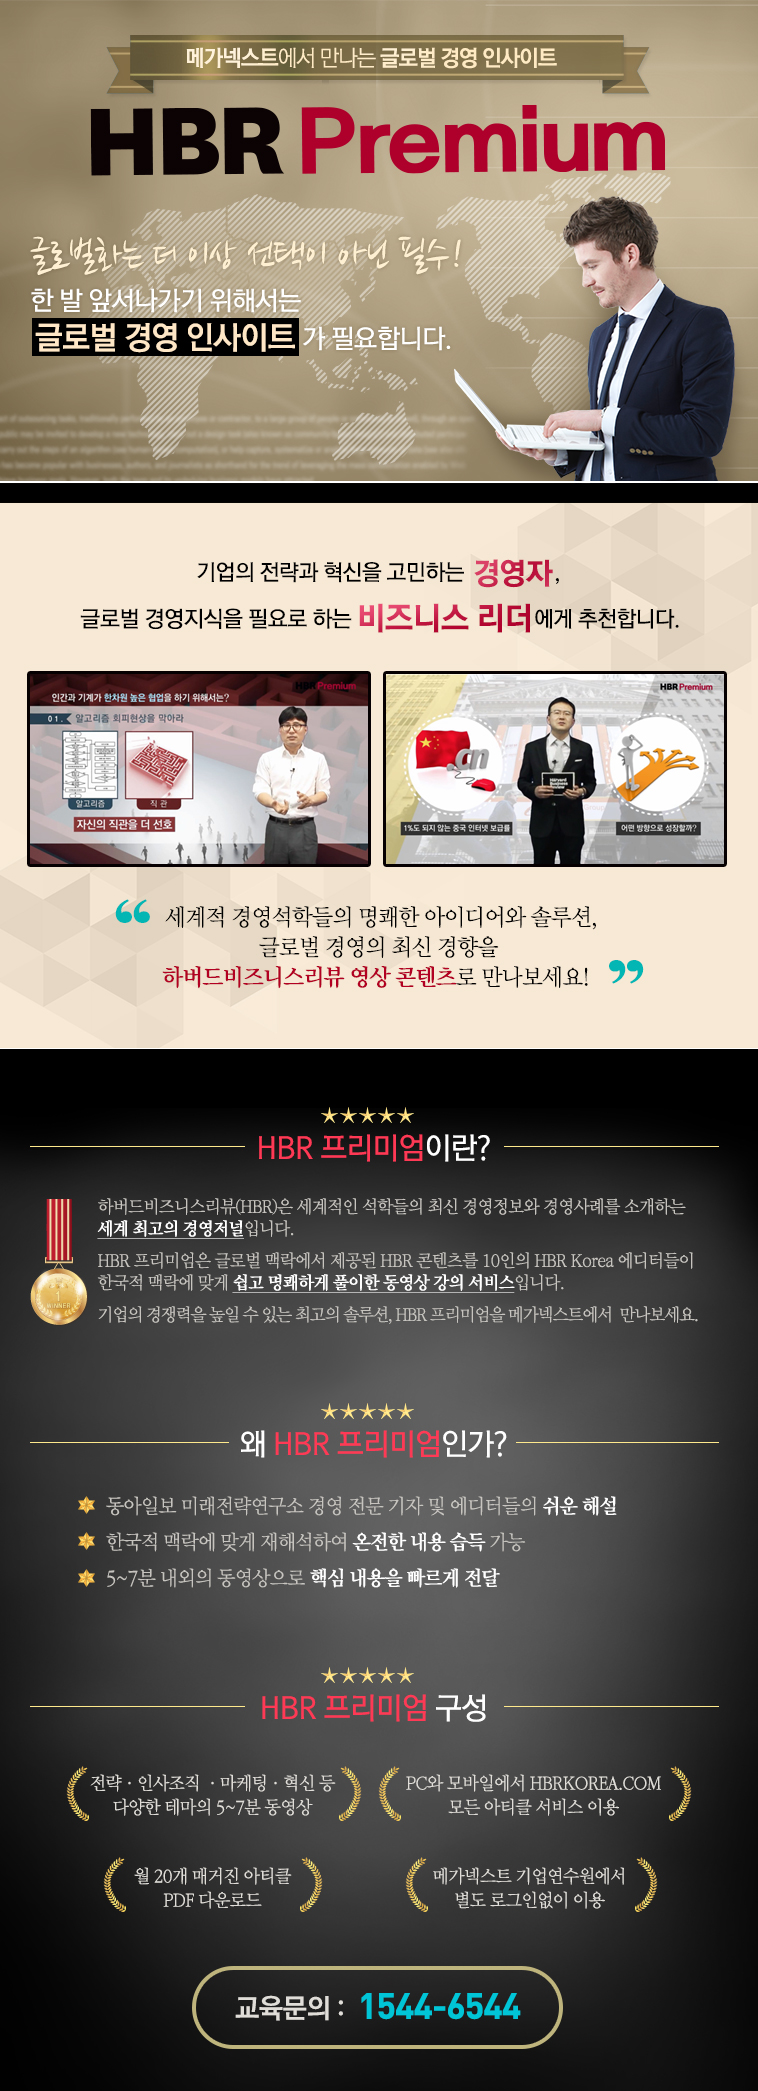 HBR Premium